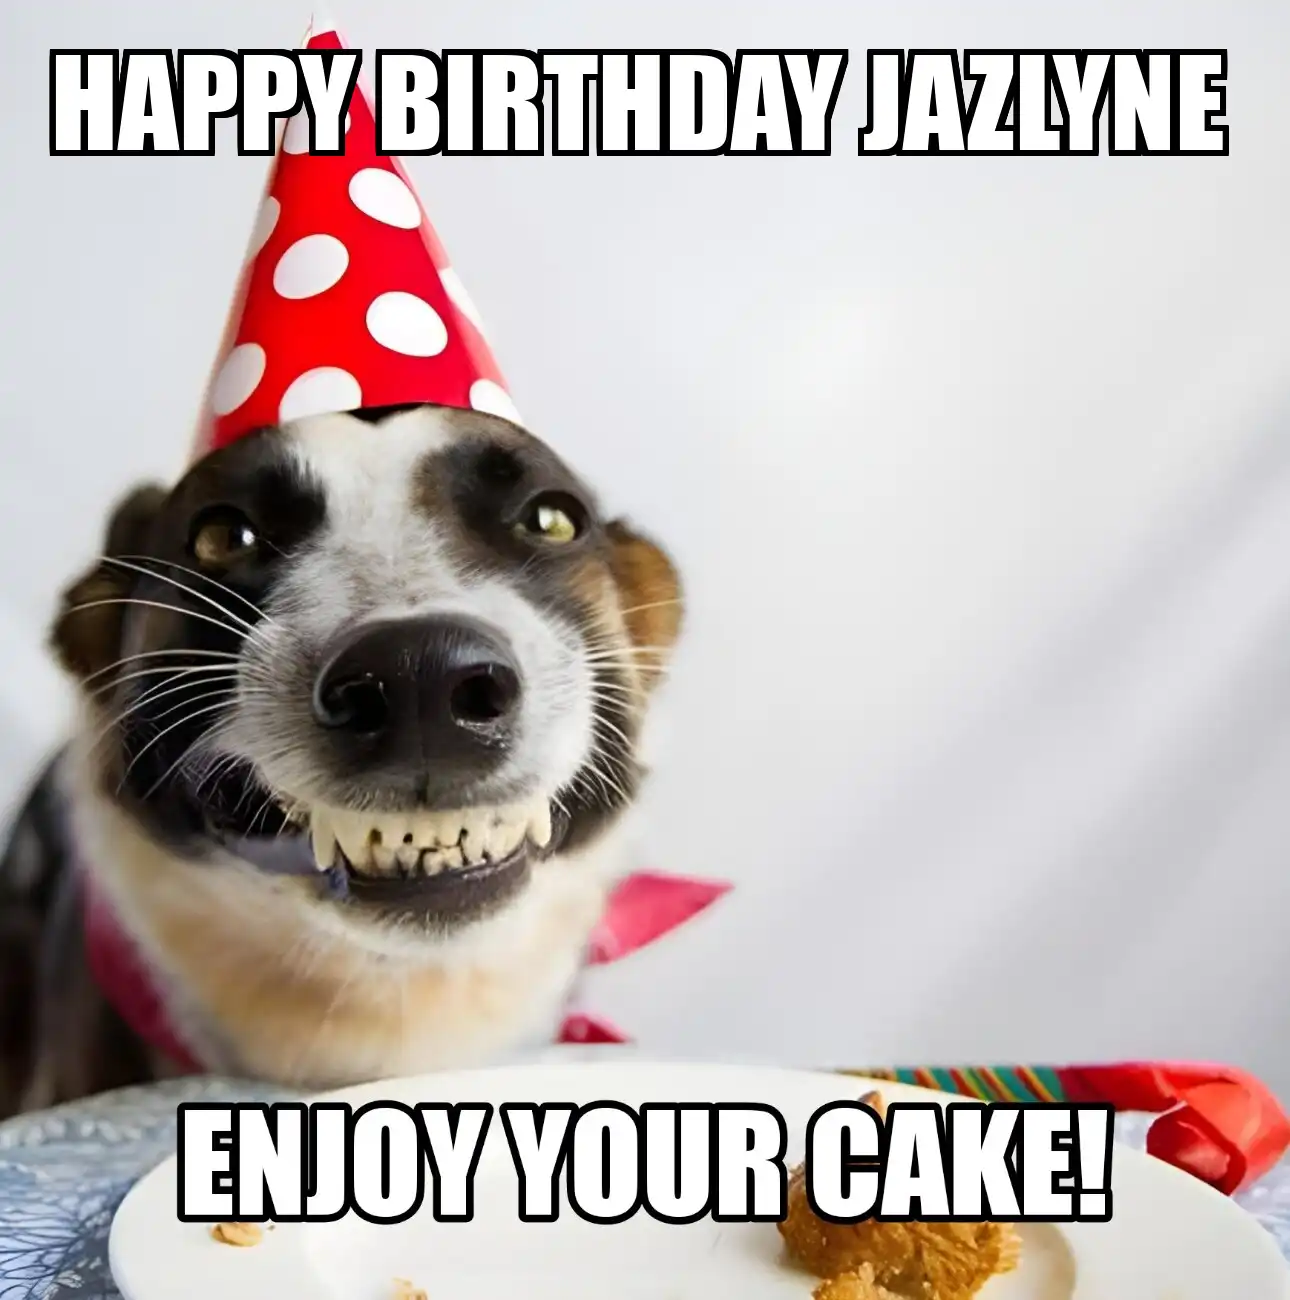 Happy Birthday Jazlyne Enjoy Your Cake Dog Meme